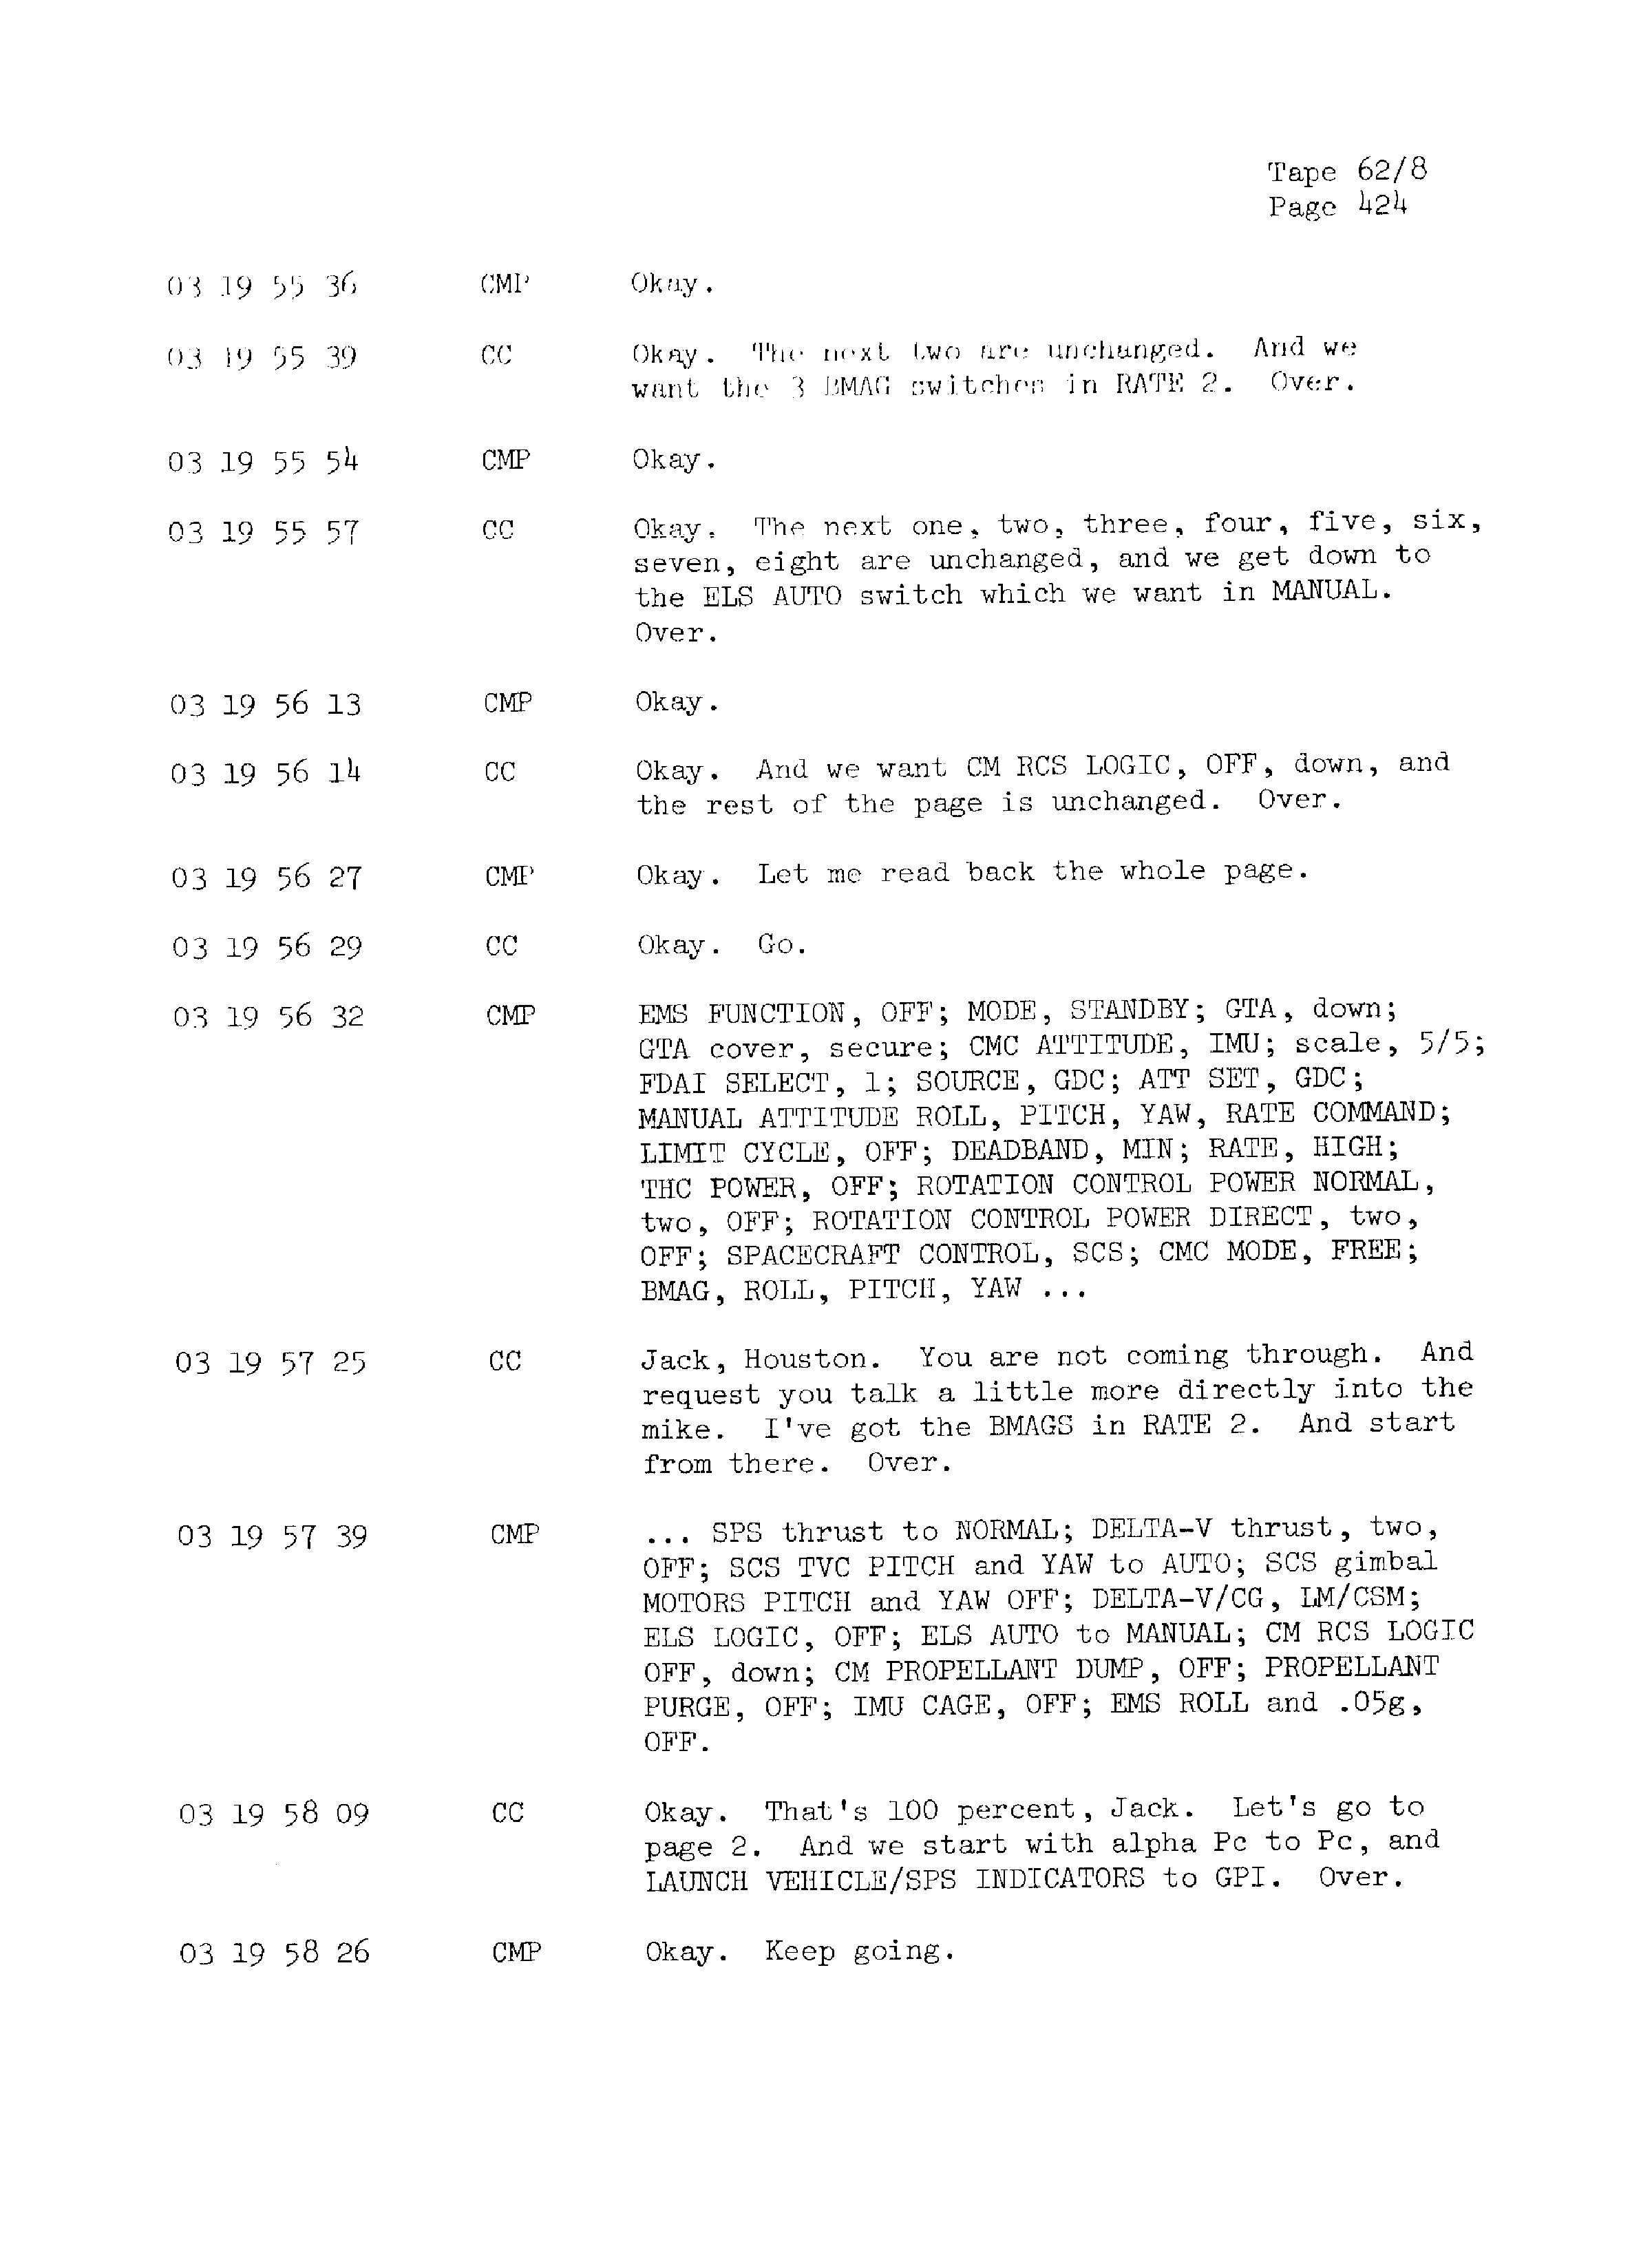 Page 431 of Apollo 13’s original transcript